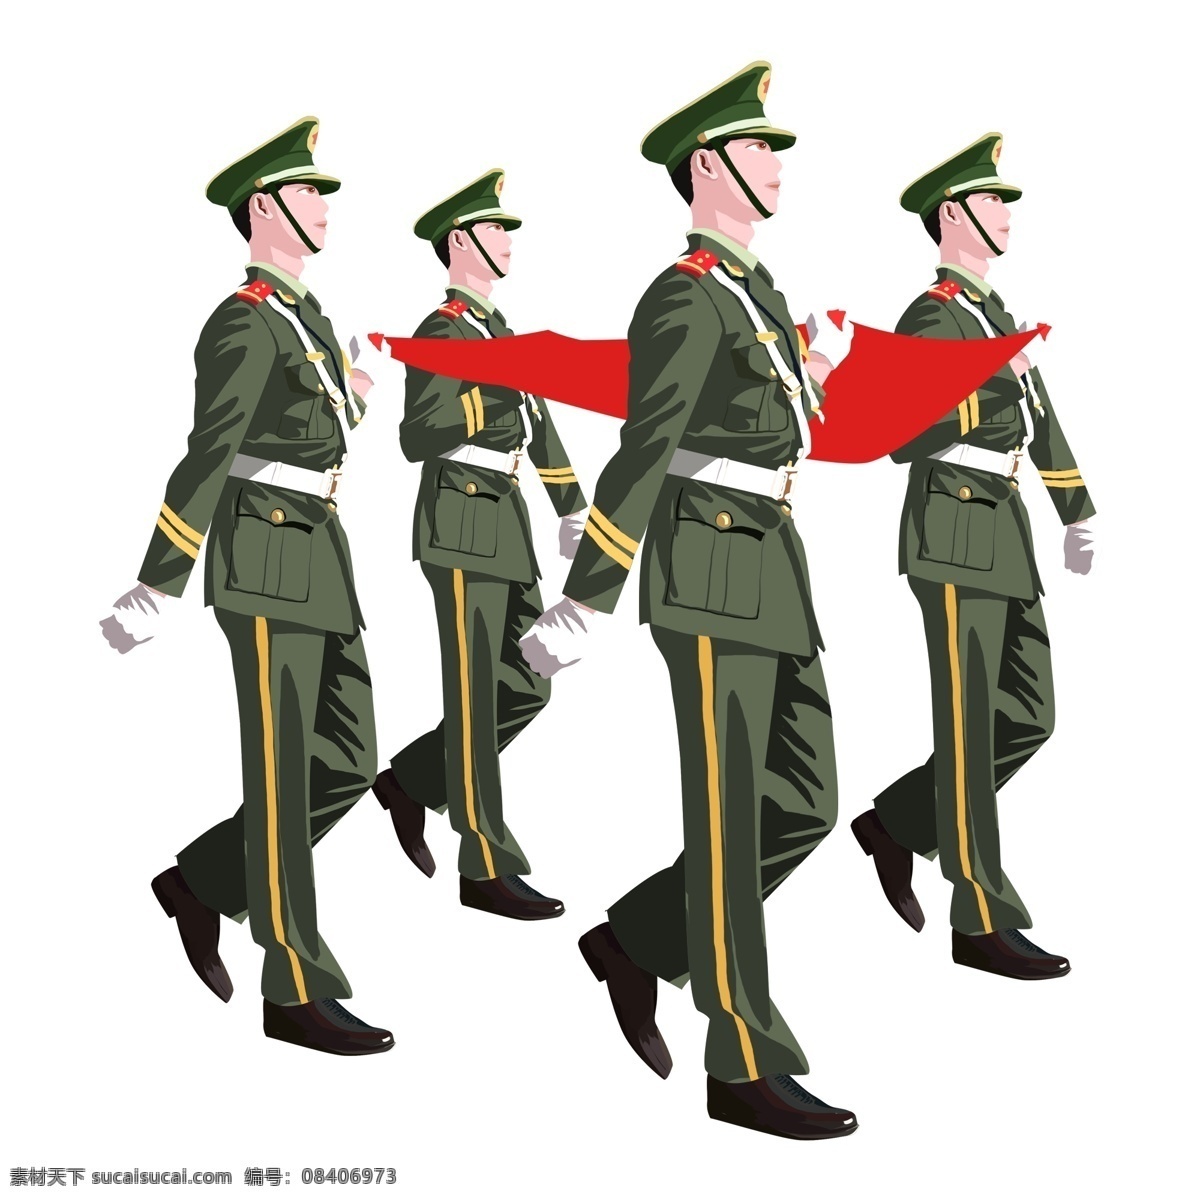 建军节 准备 升 红旗 军人 军官 节日 传统节日 当兵的人 卡通 可爱 国旗 红色 绿色 军装 套装 帽子